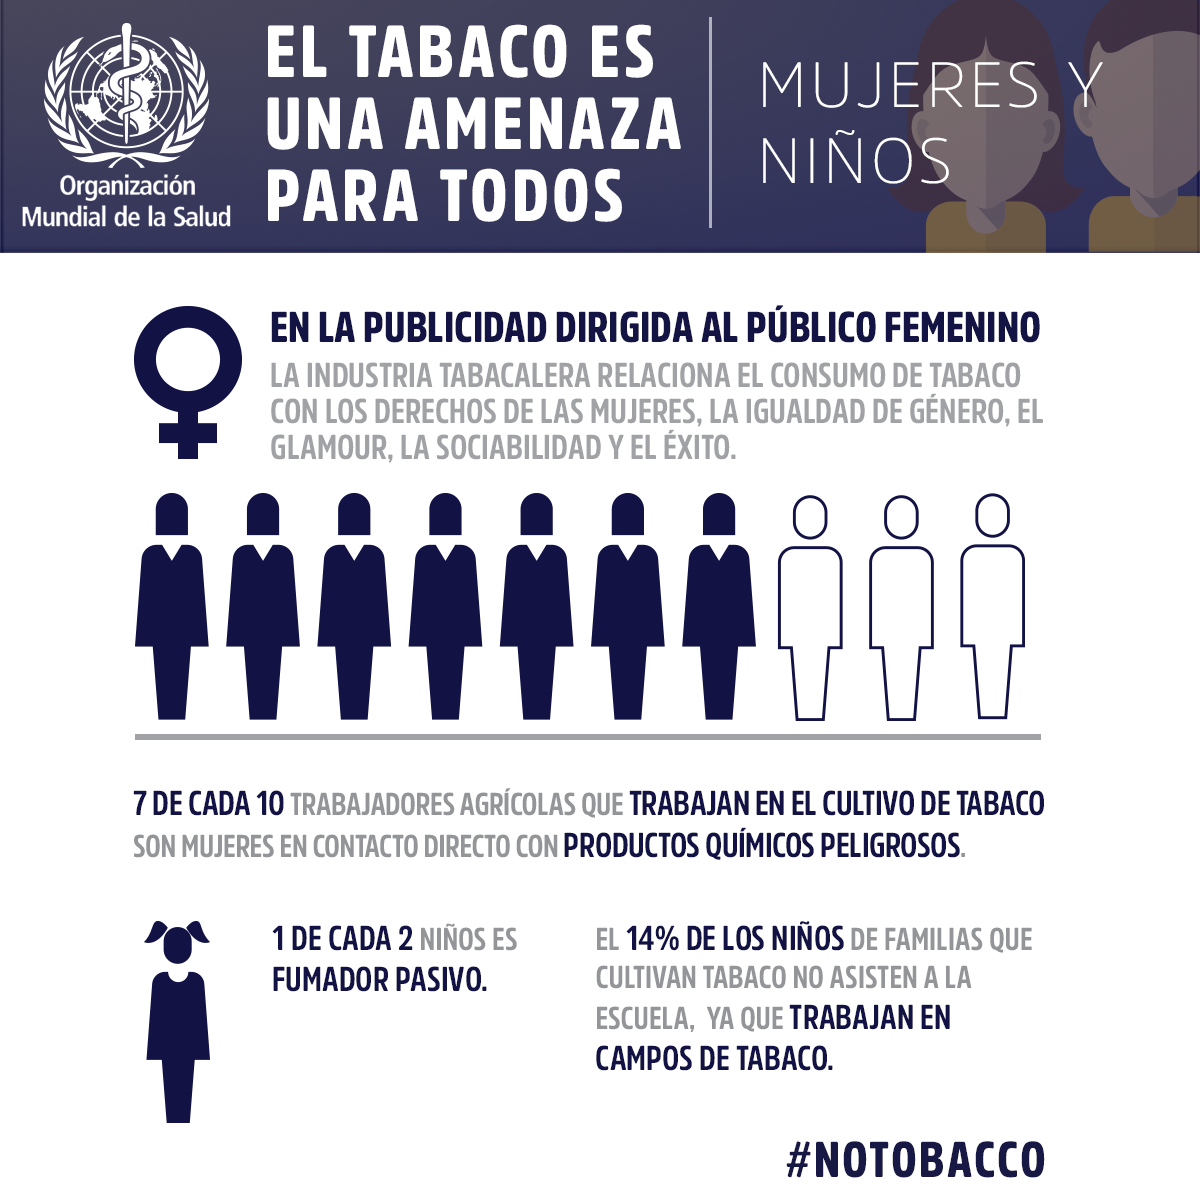 Infographic Womenchildren Spanish